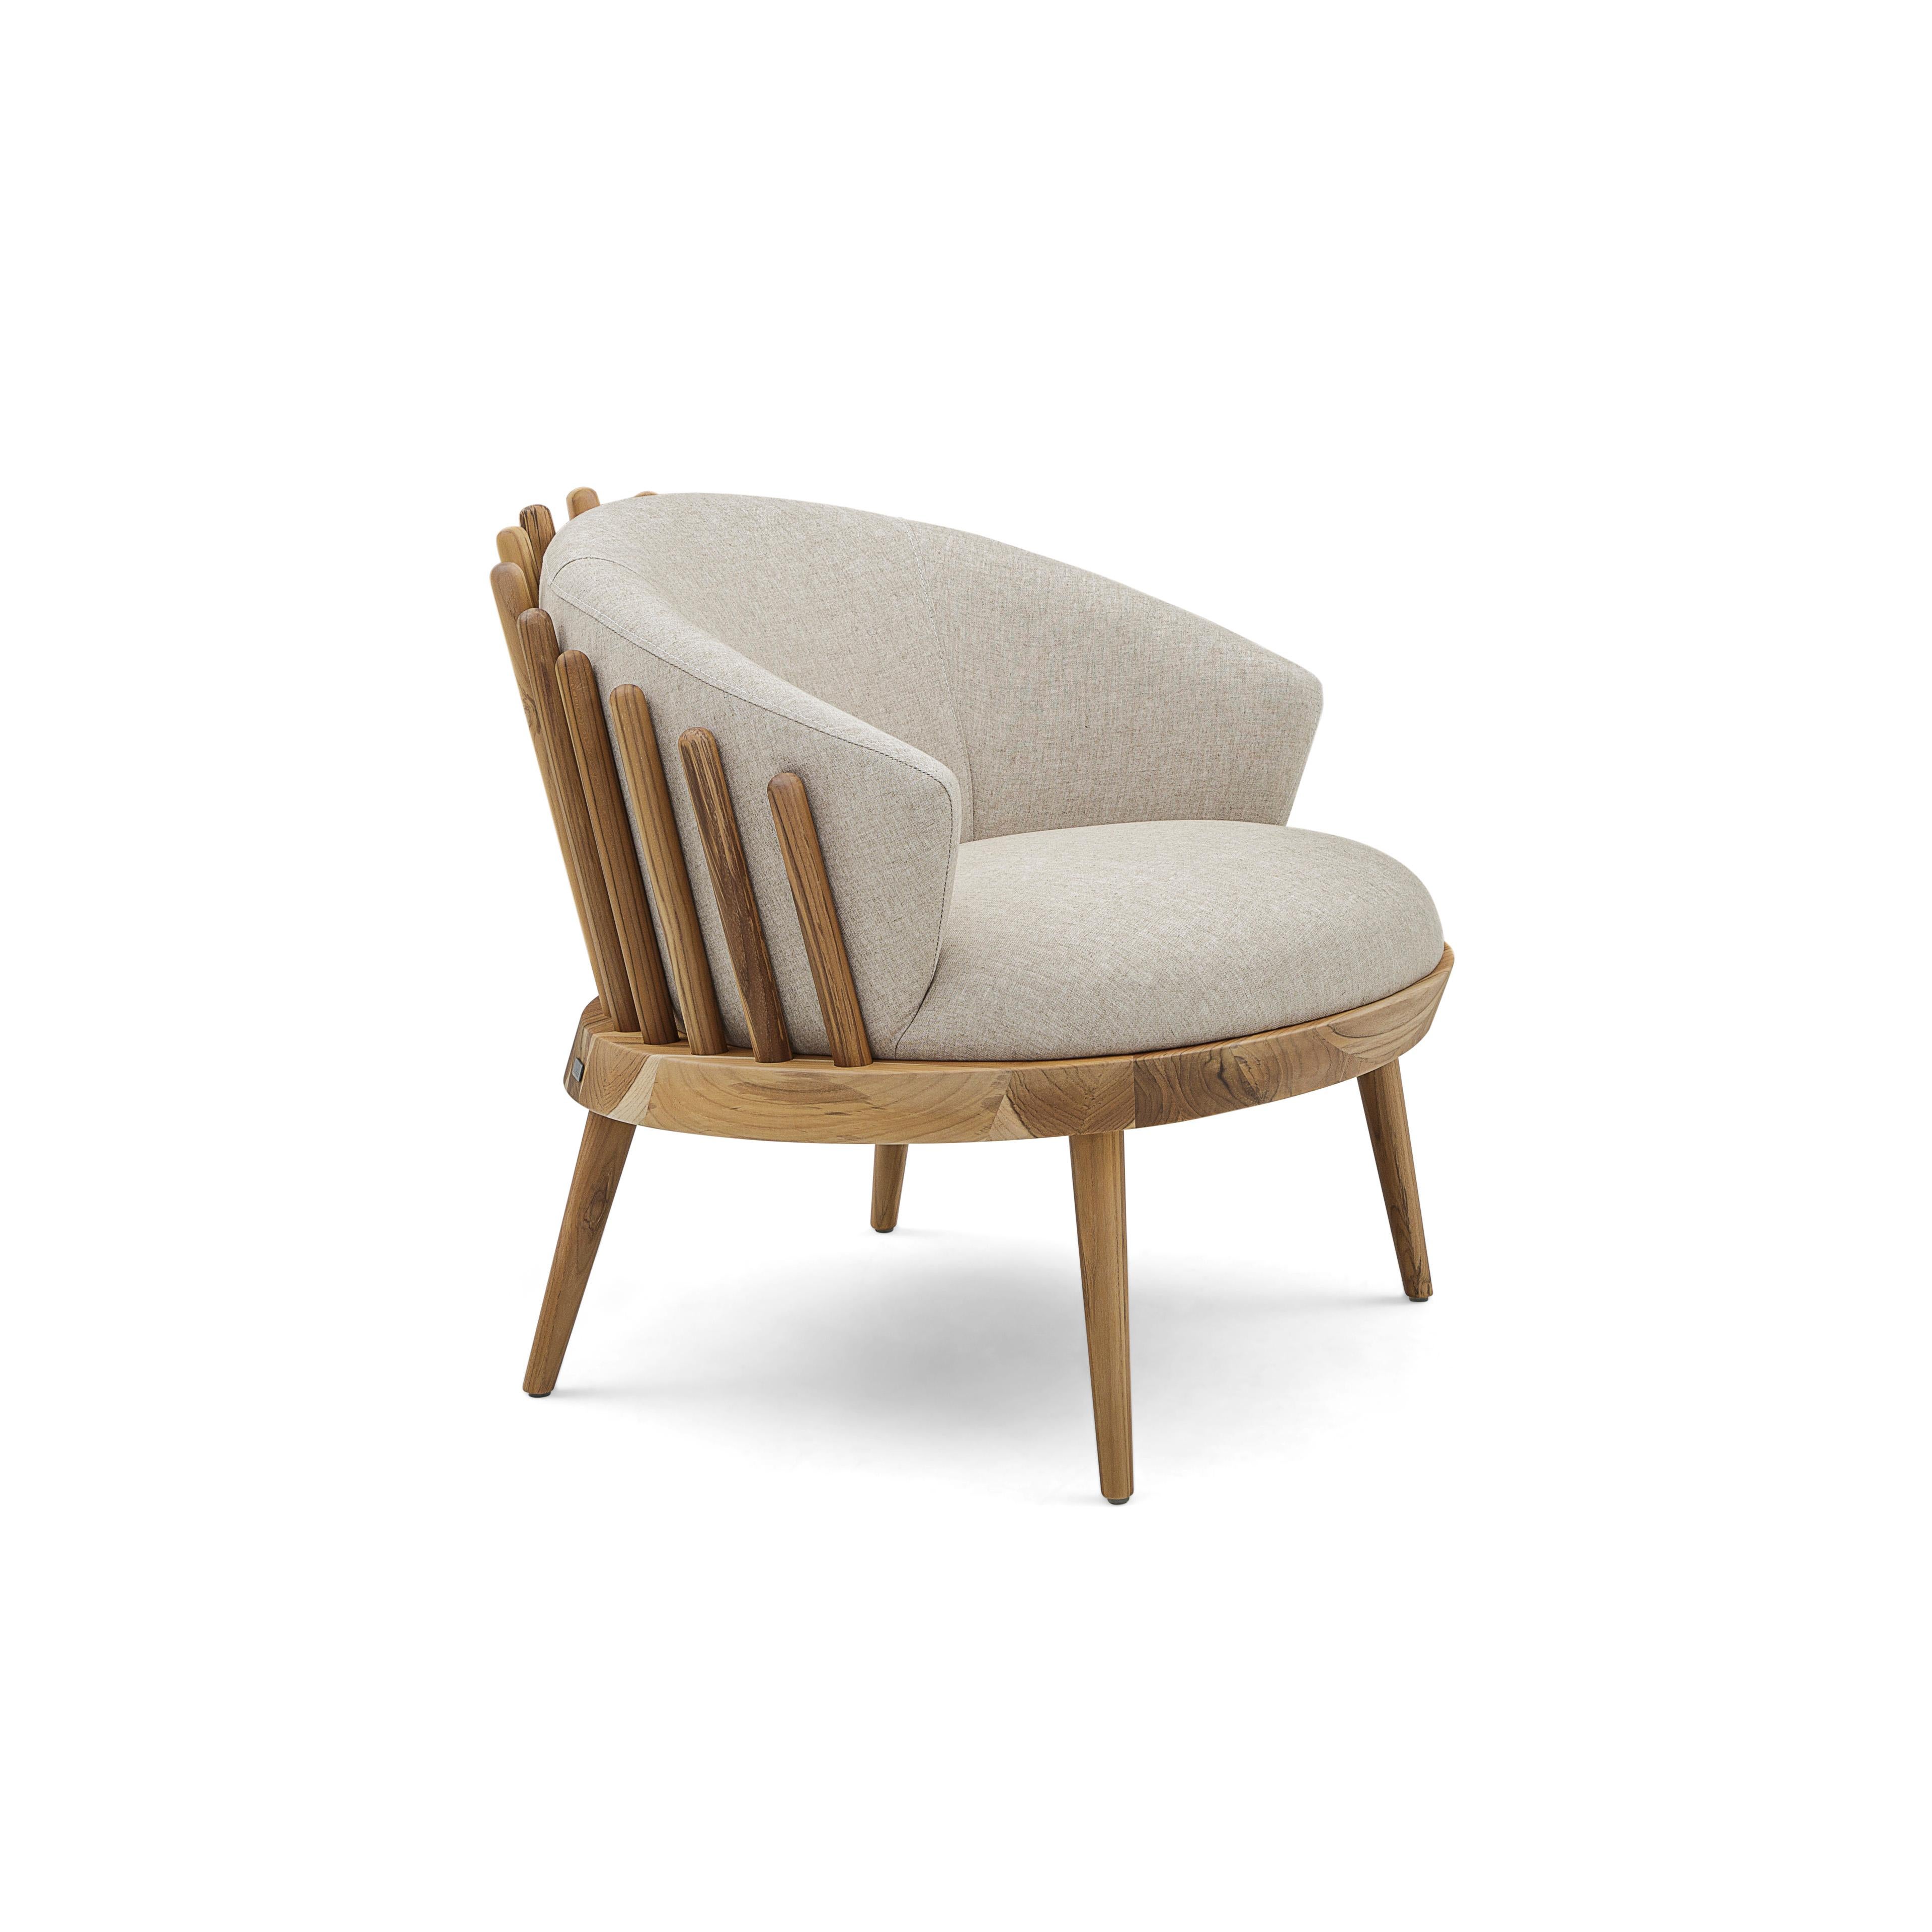 L'équipe de designers d'Uultis a créé ce magnifique fauteuil Fane, revêtu d'un beau et doux tissu ivoire, agrémenté d'une finition en bois de teck. Cette magnifique création offrira un espace confortable parfait avec son assise et son dossier